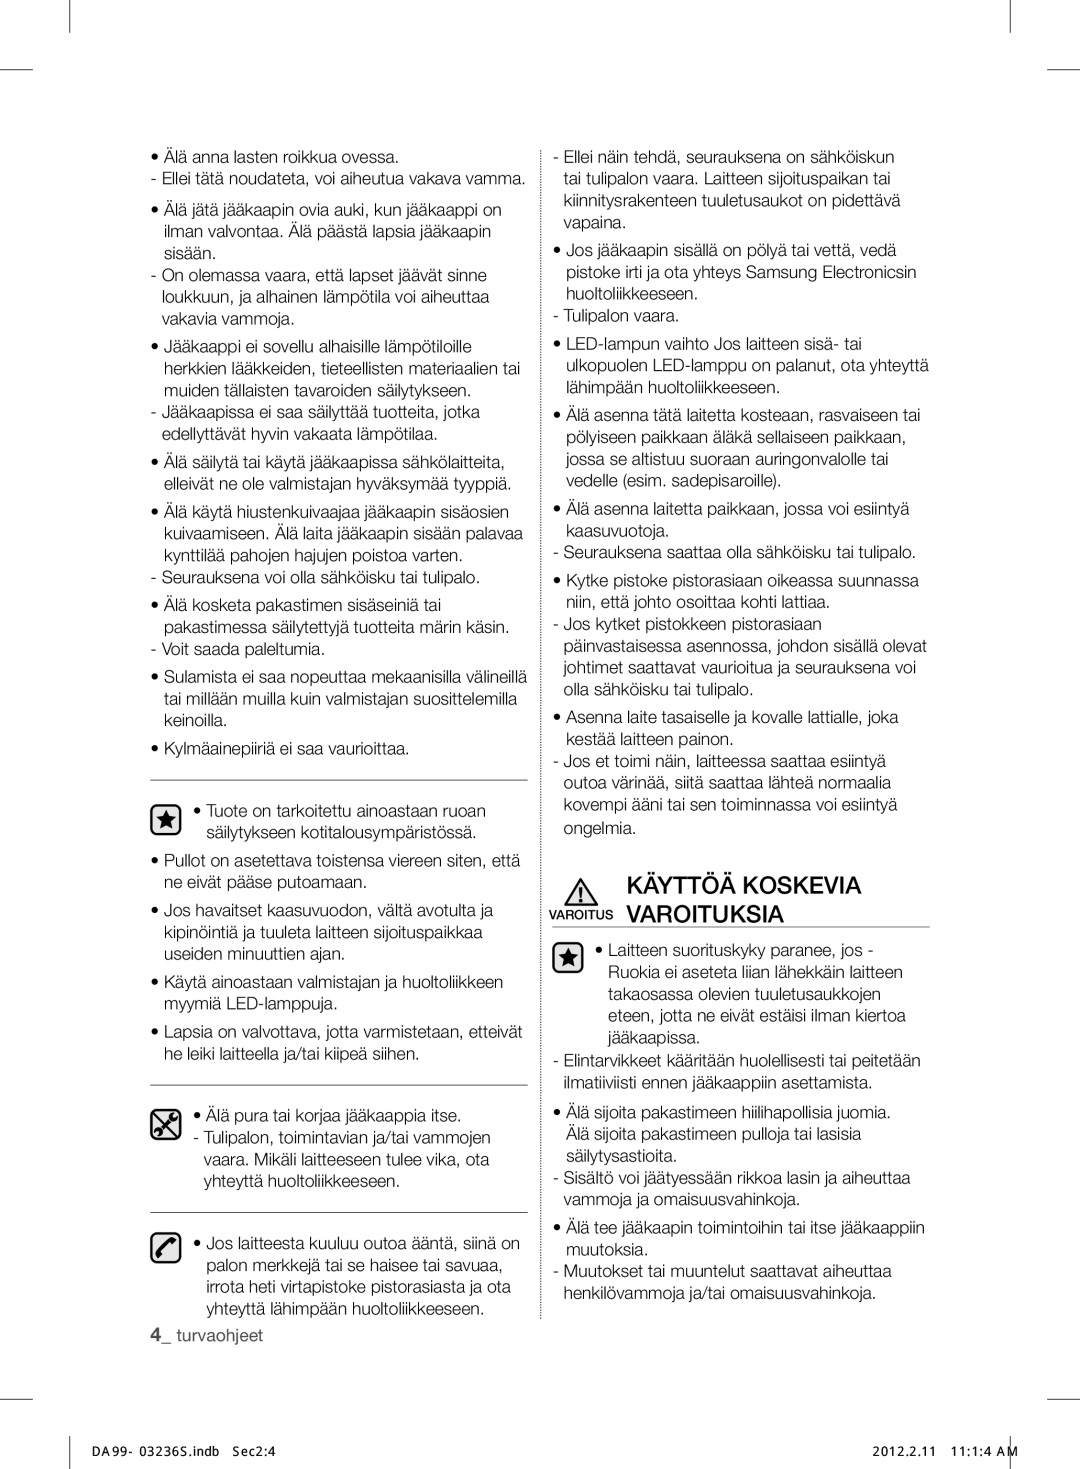 Samsung RL39TJCSW1/XEF manual Käyttöä Koskevia Varoitus Varoituksia, Seurauksena voi olla sähköisku tai tulipalo 